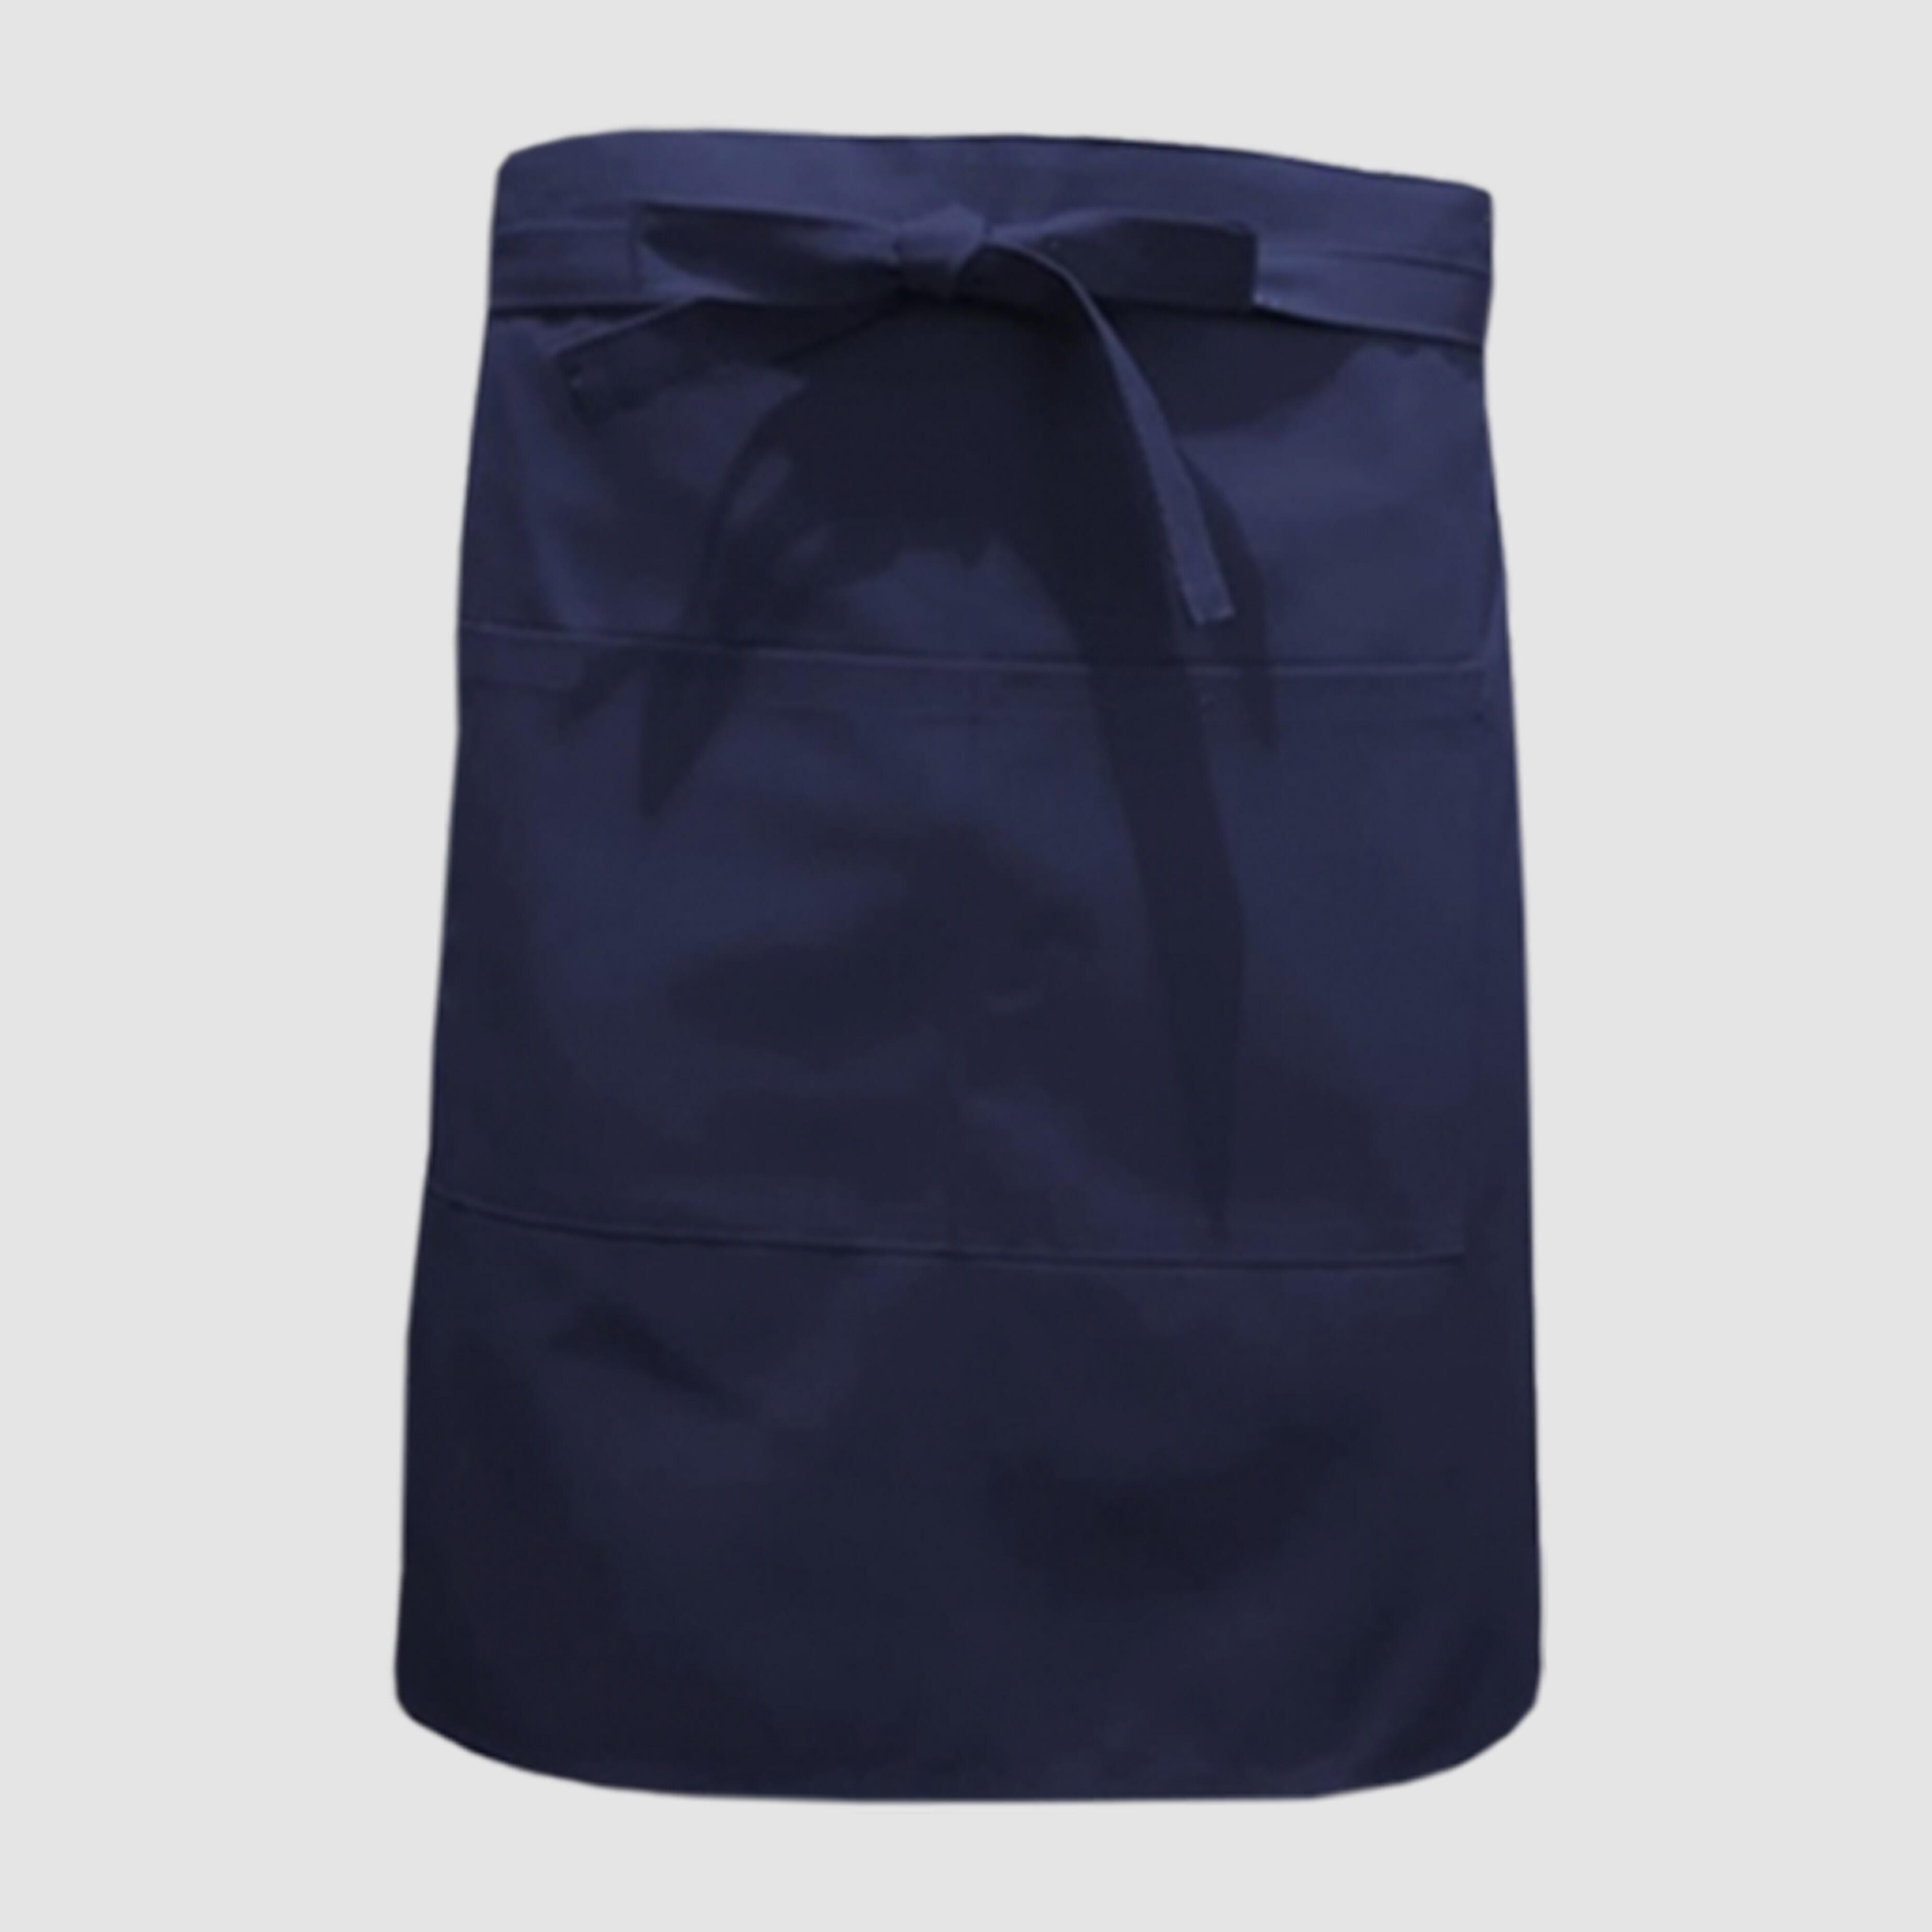 Nibano mid length waist apron with pockets navy